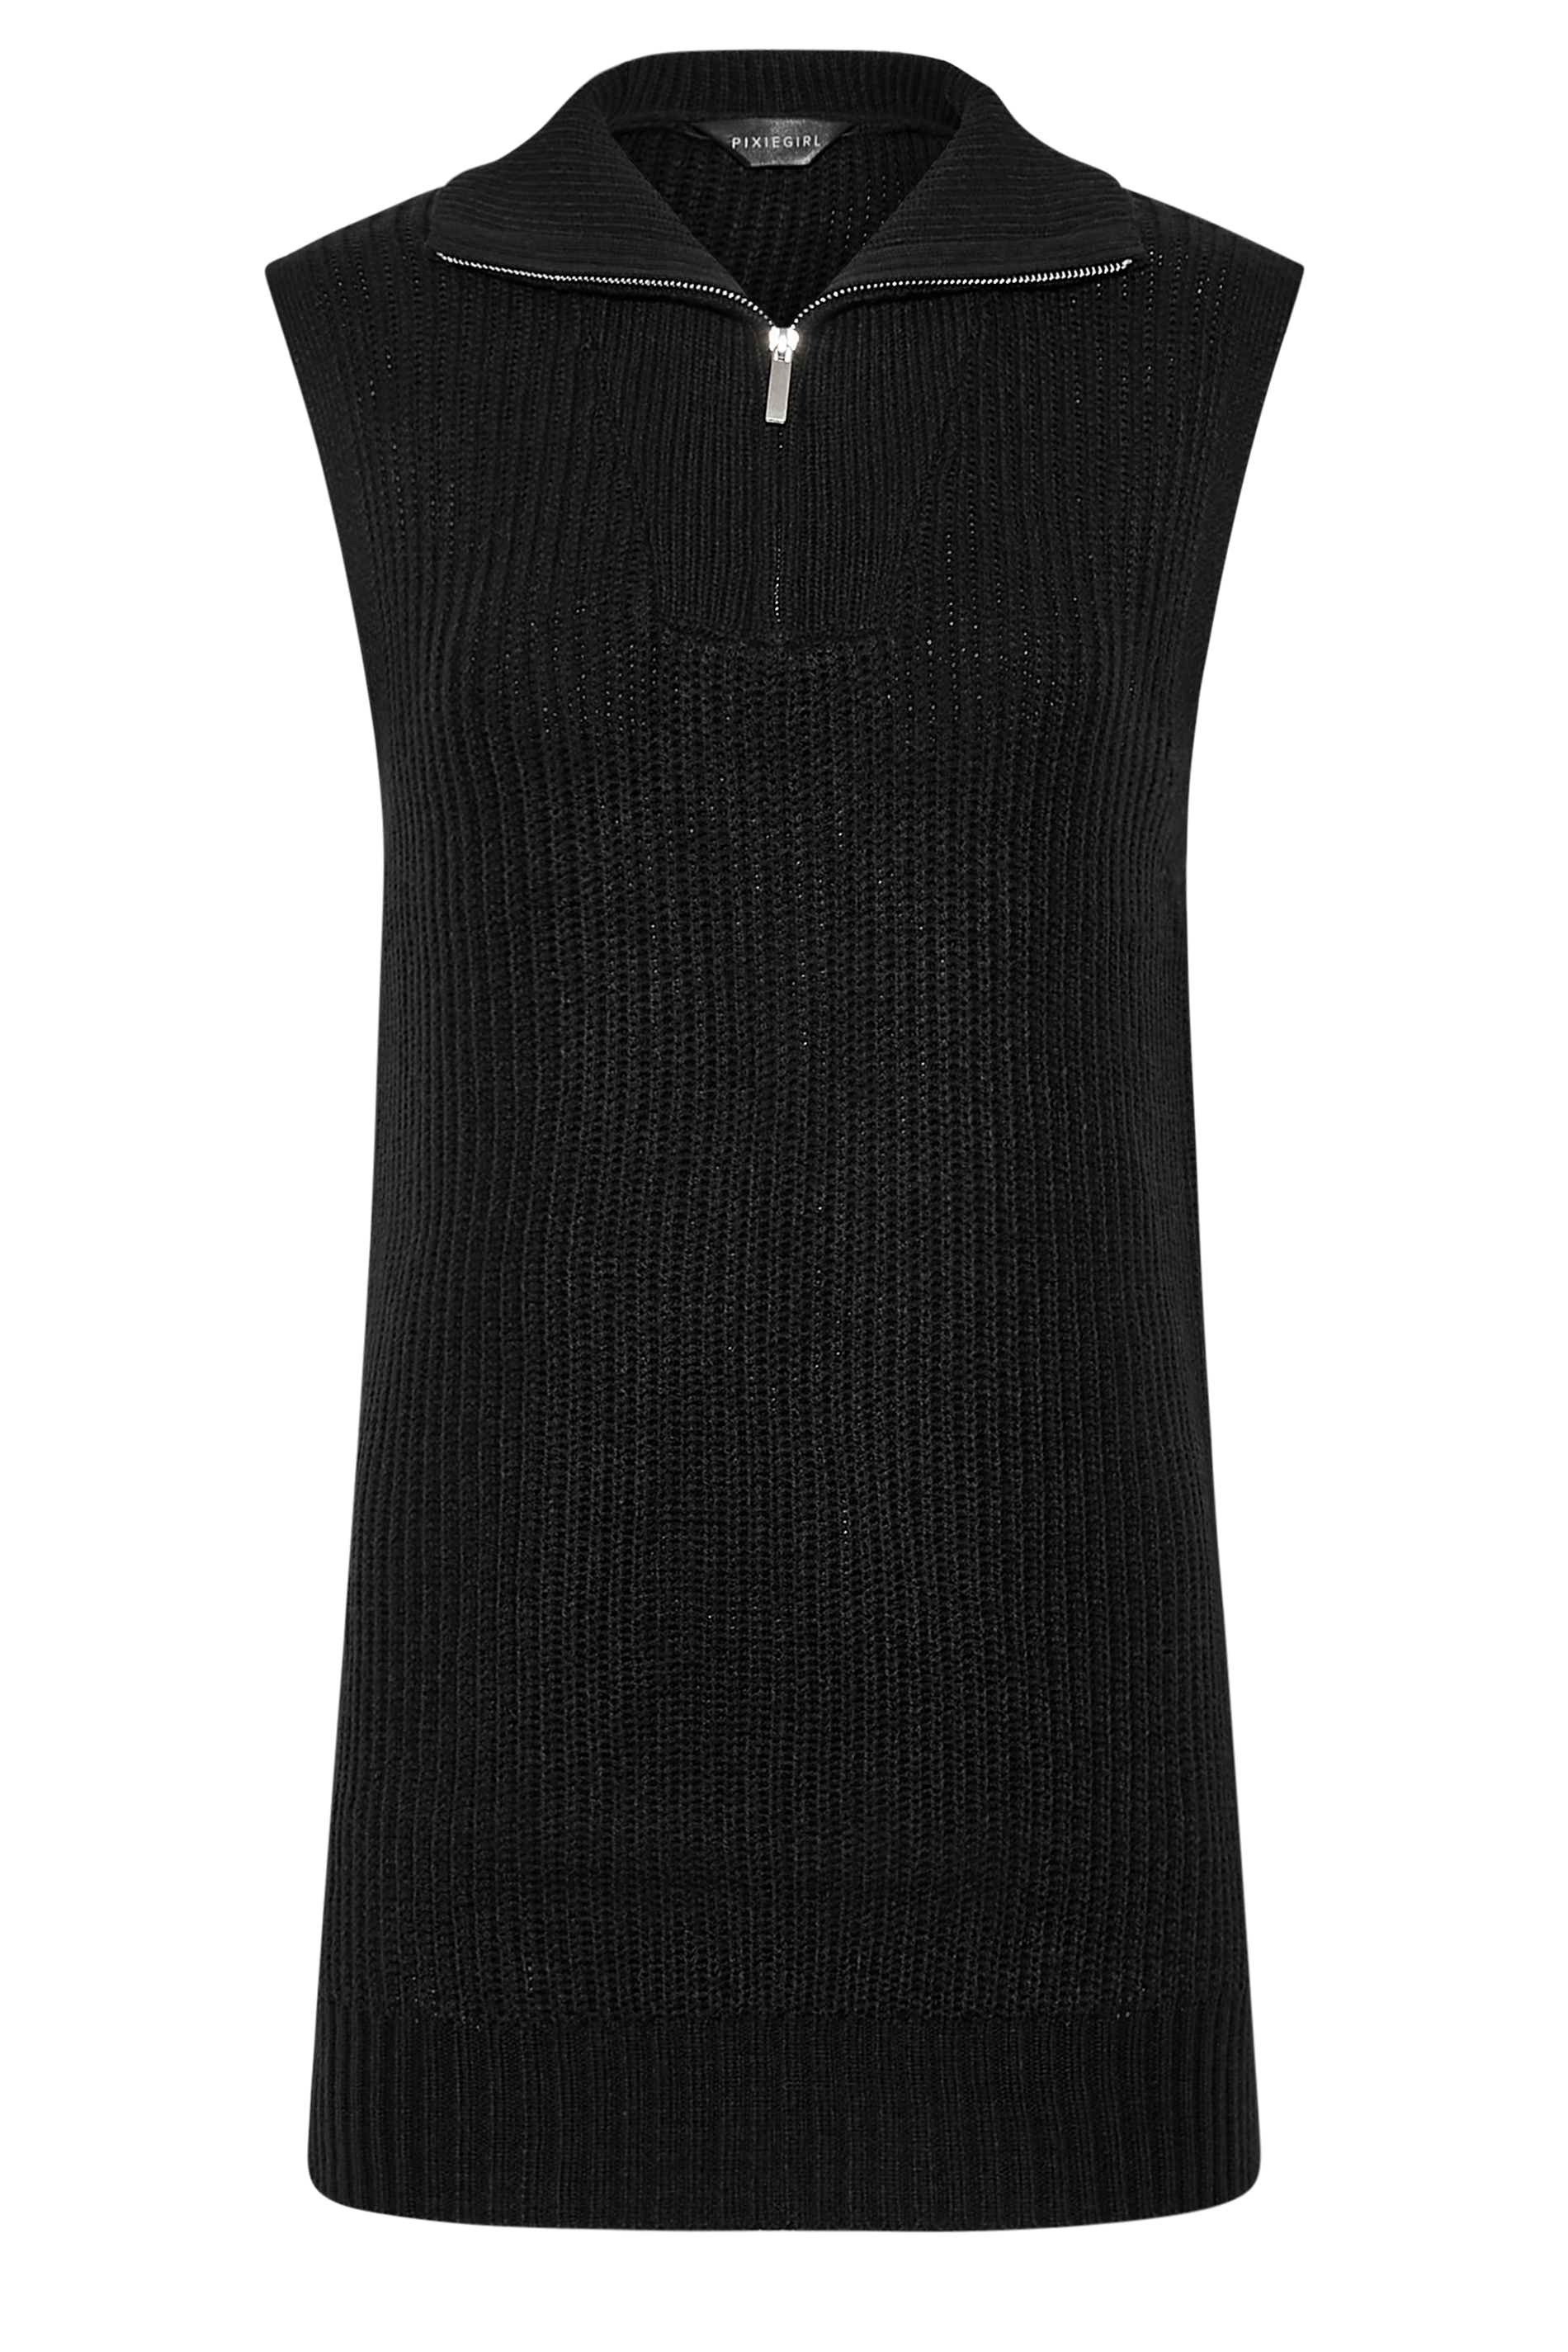 Petite Black Zip Longline Knitted Vest Top | PixieGirl